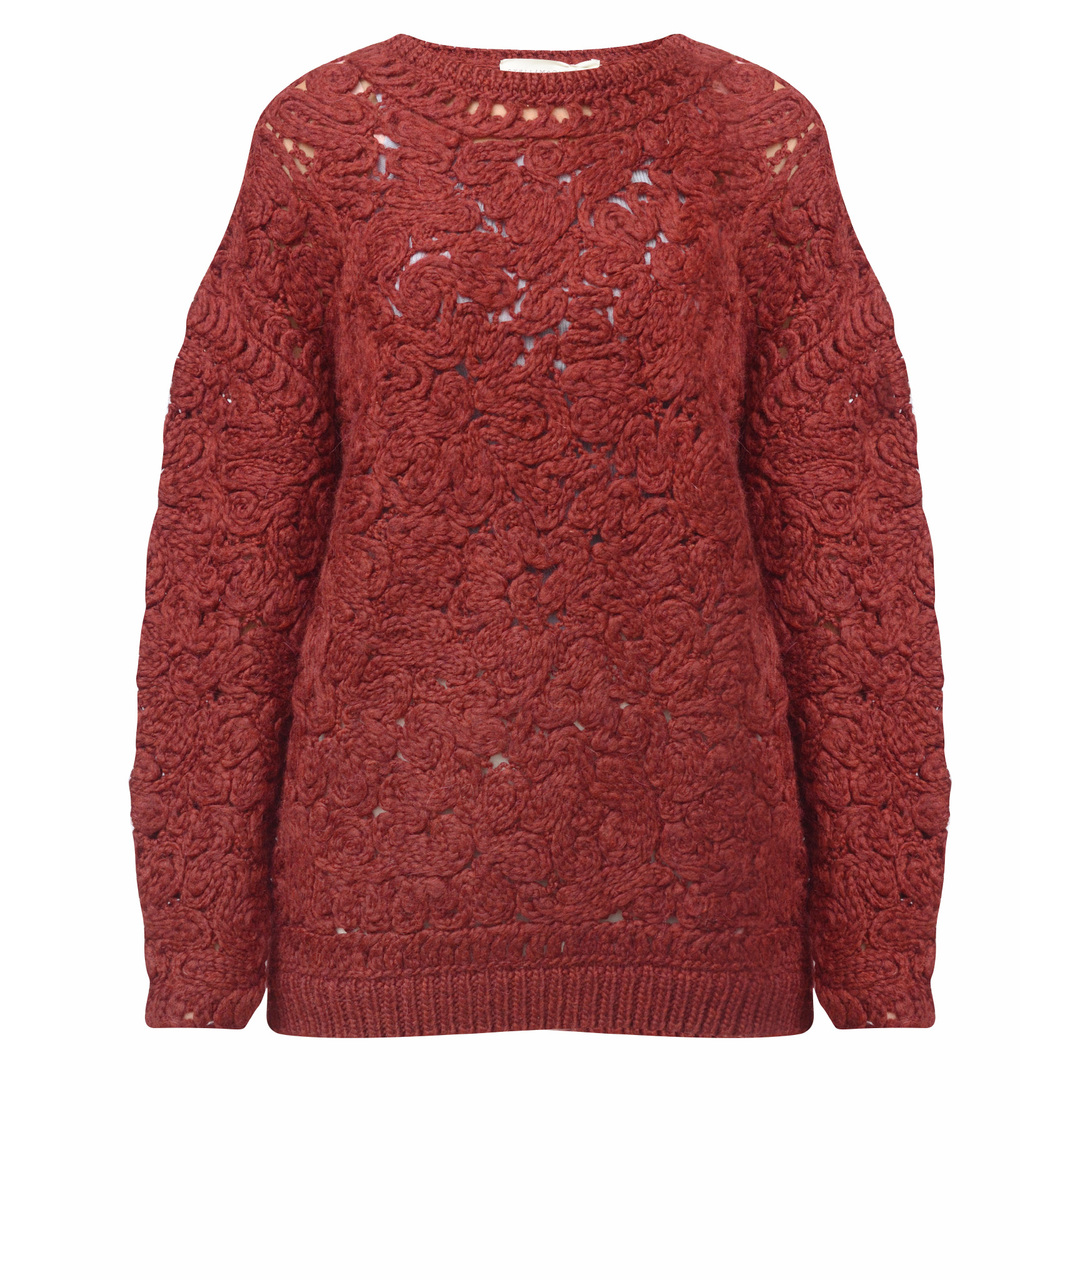 STELLA MCCARTNEY Бордовый шерстяной джемпер / свитер, фото 1